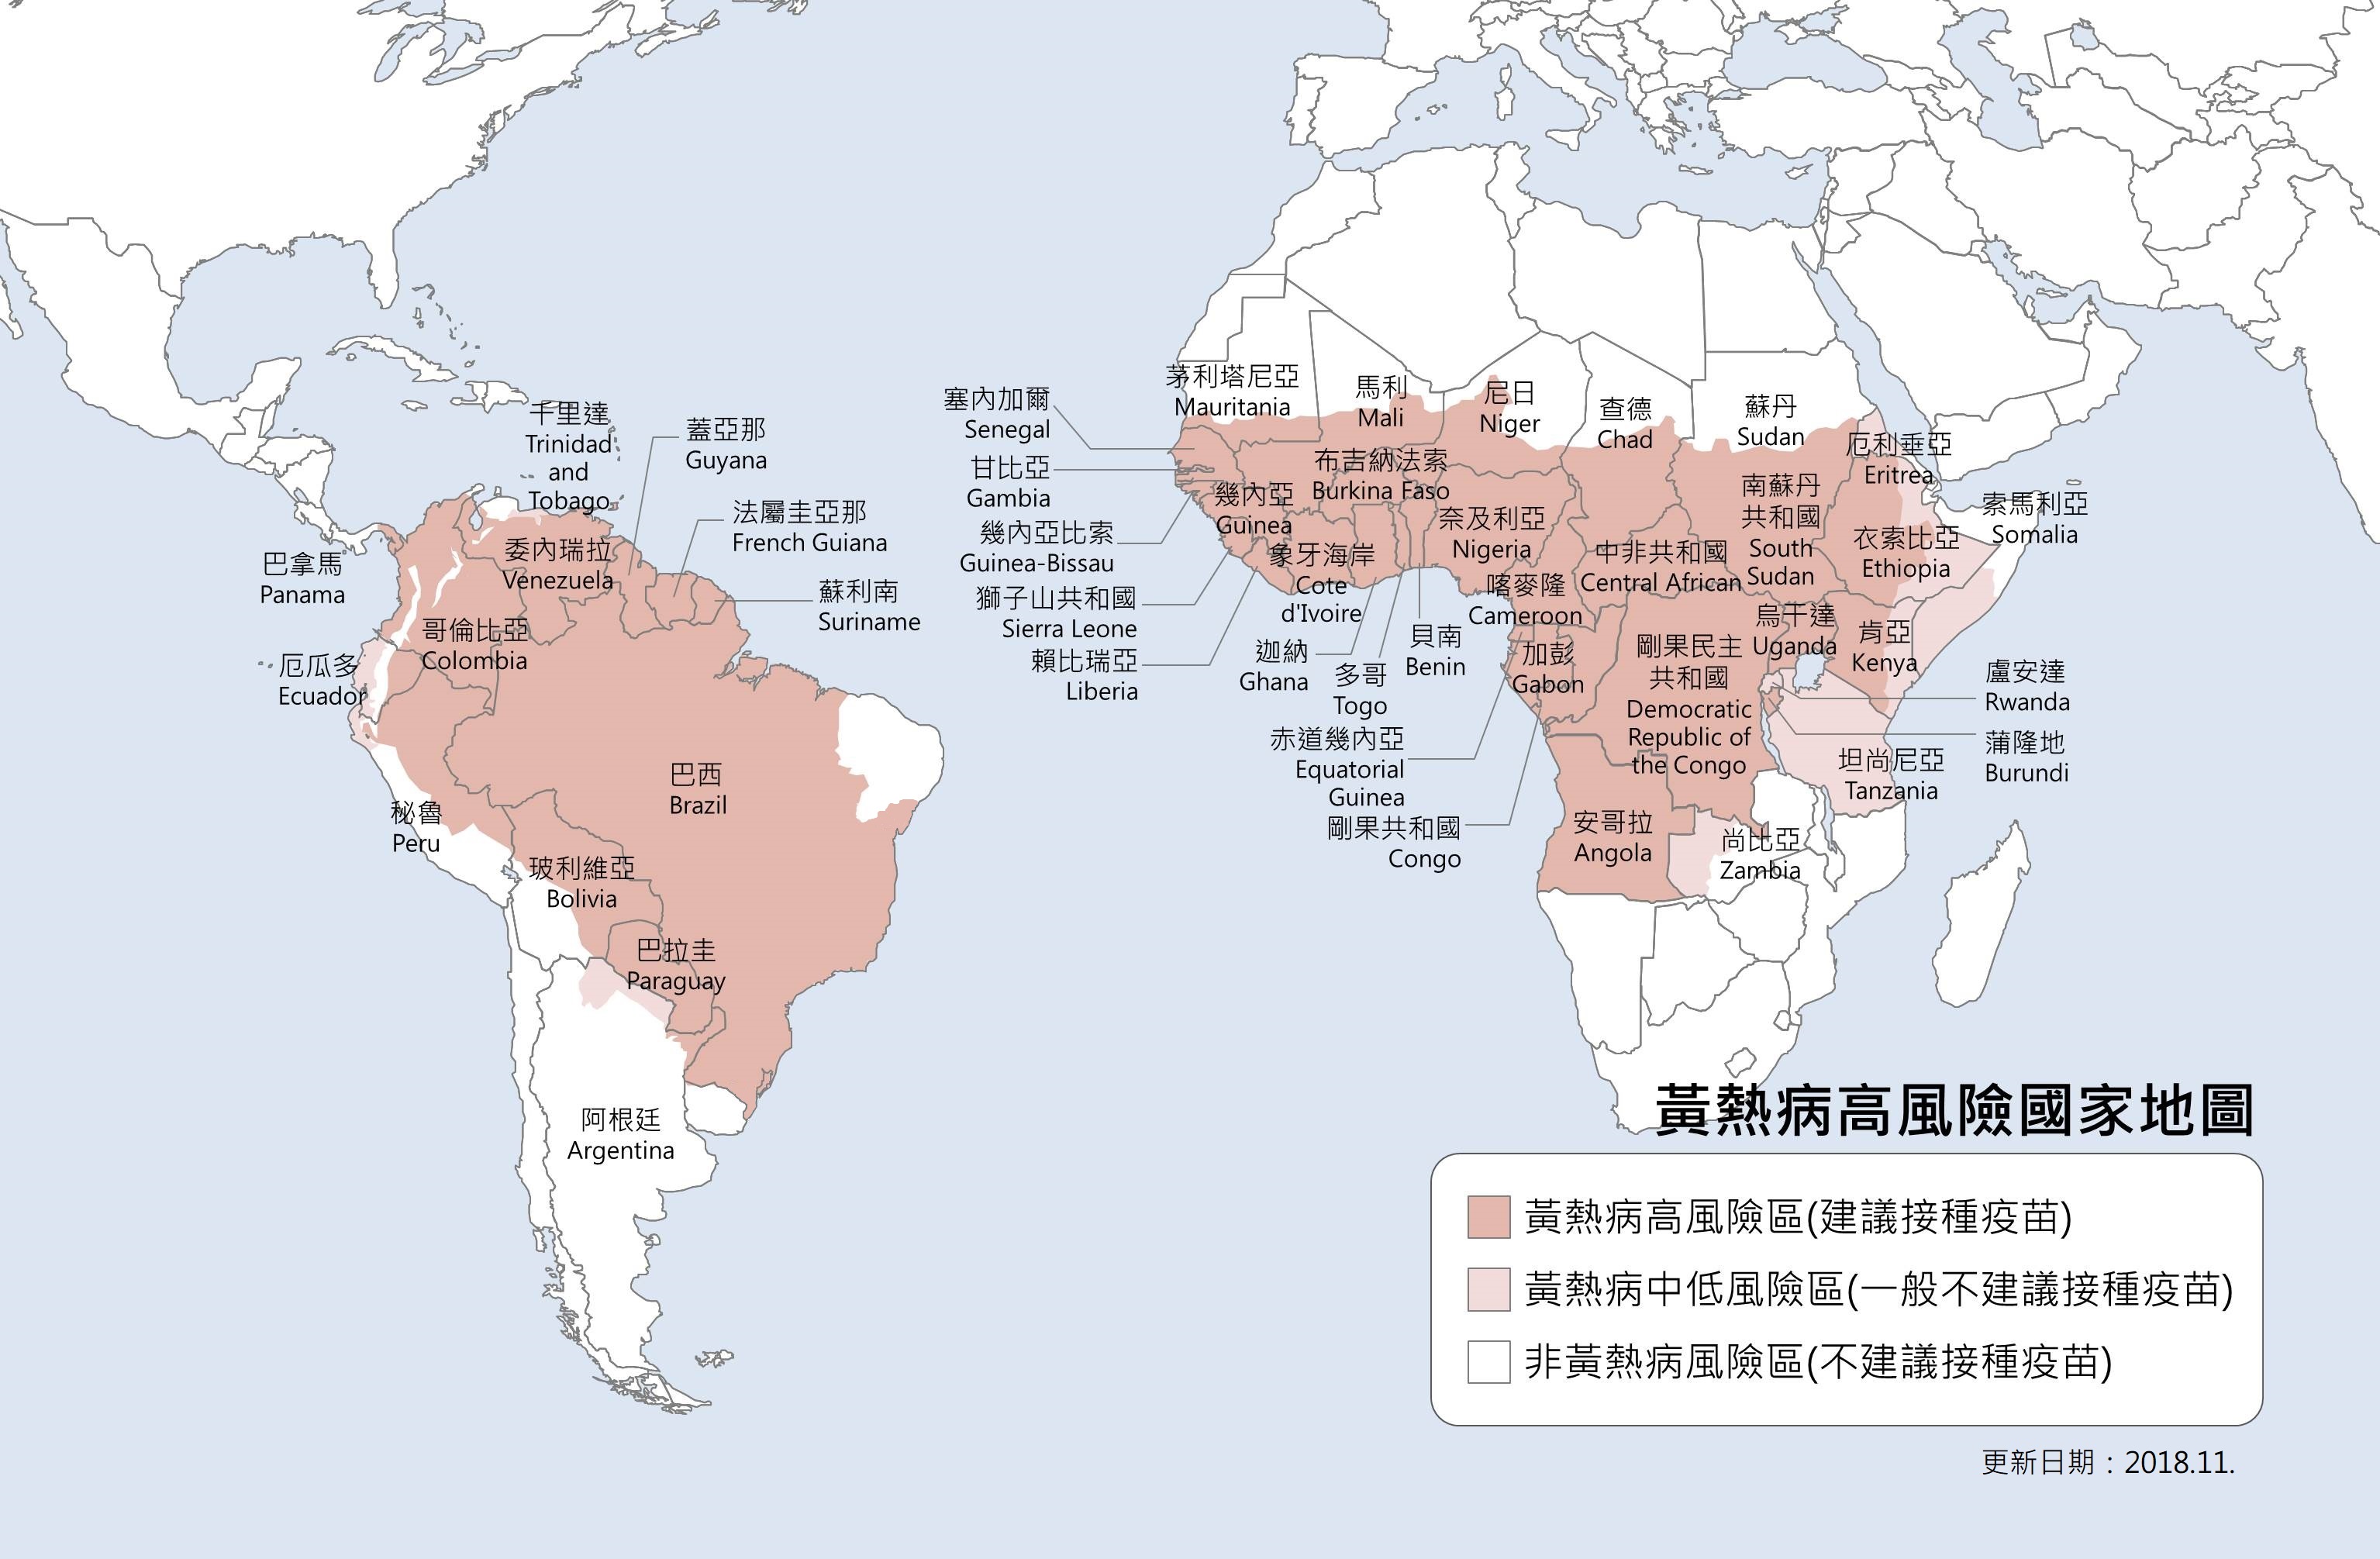 黃熱病高風險國家地圖.jpg